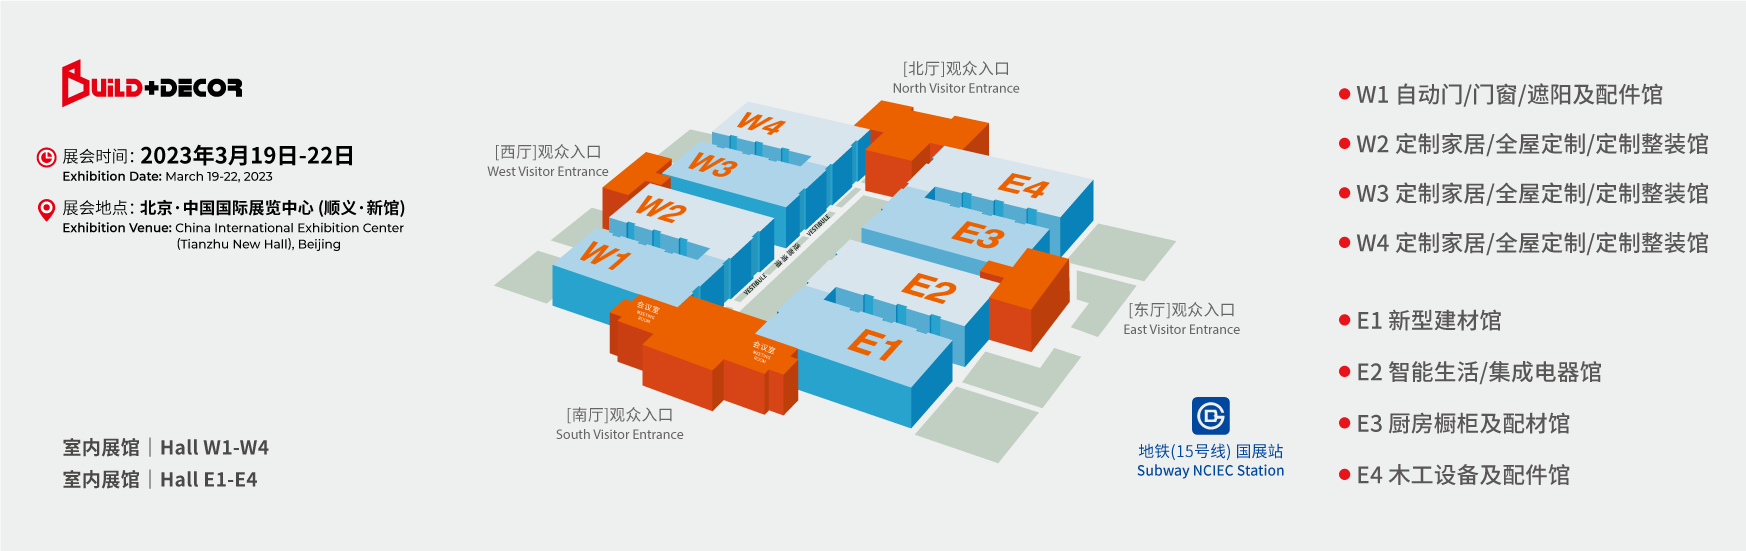 2023--北京建博会--3月-全馆平面图-01.png